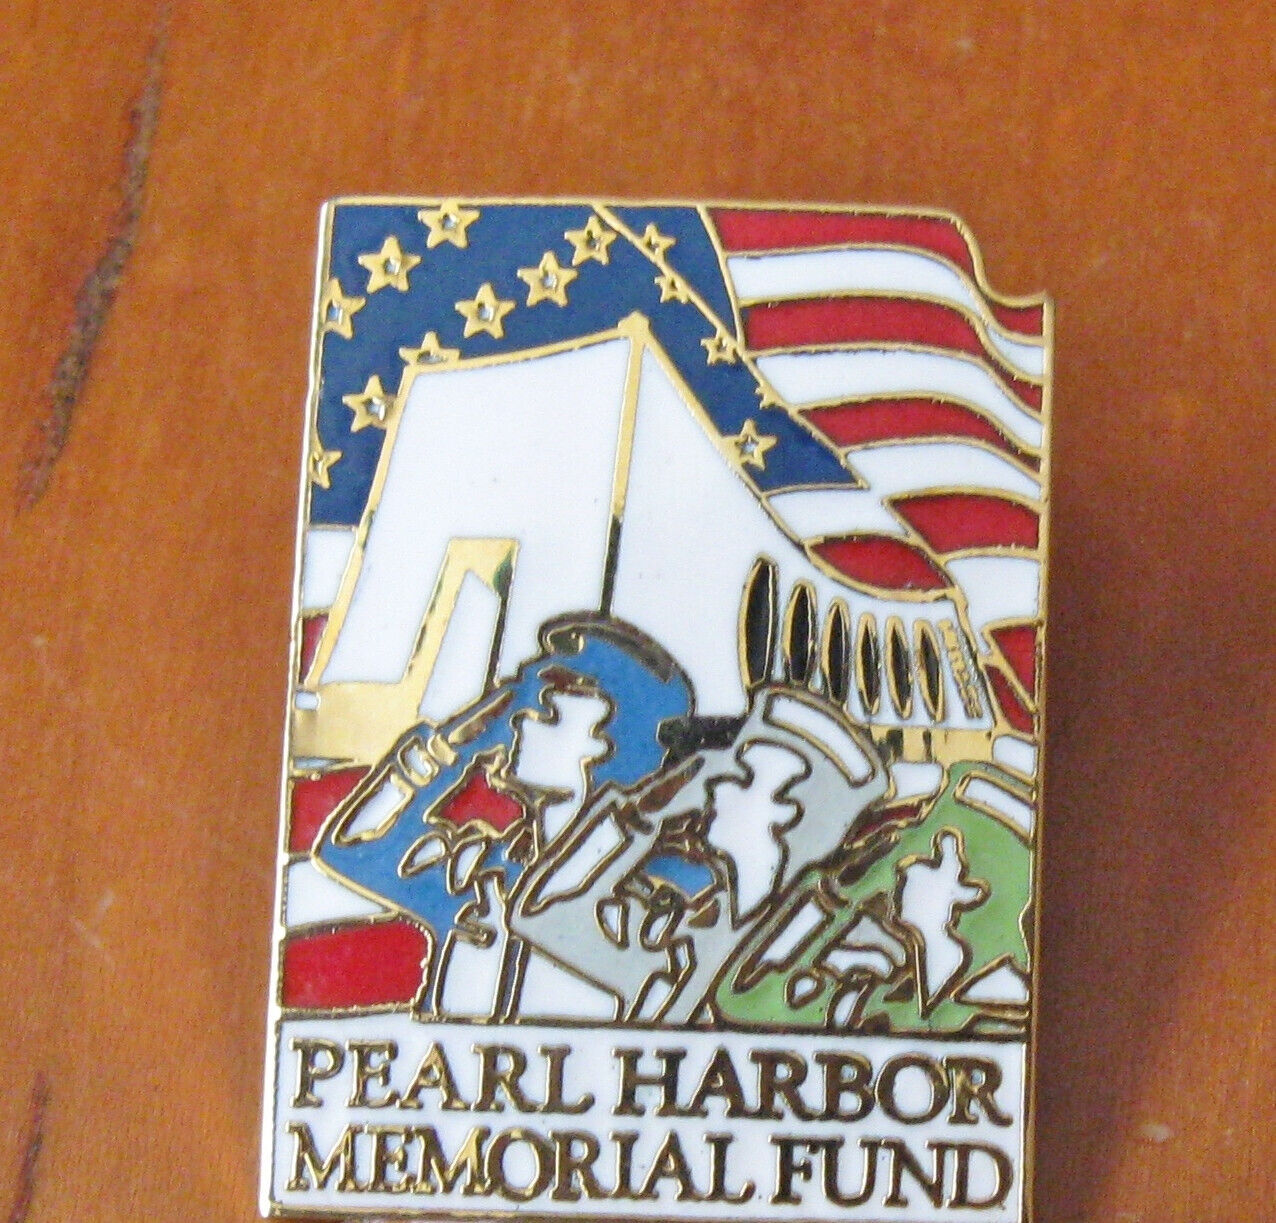 Pearl Harbor Memorial Fund Lapel Pin US Military Patriotic Lapel Hat Pin 